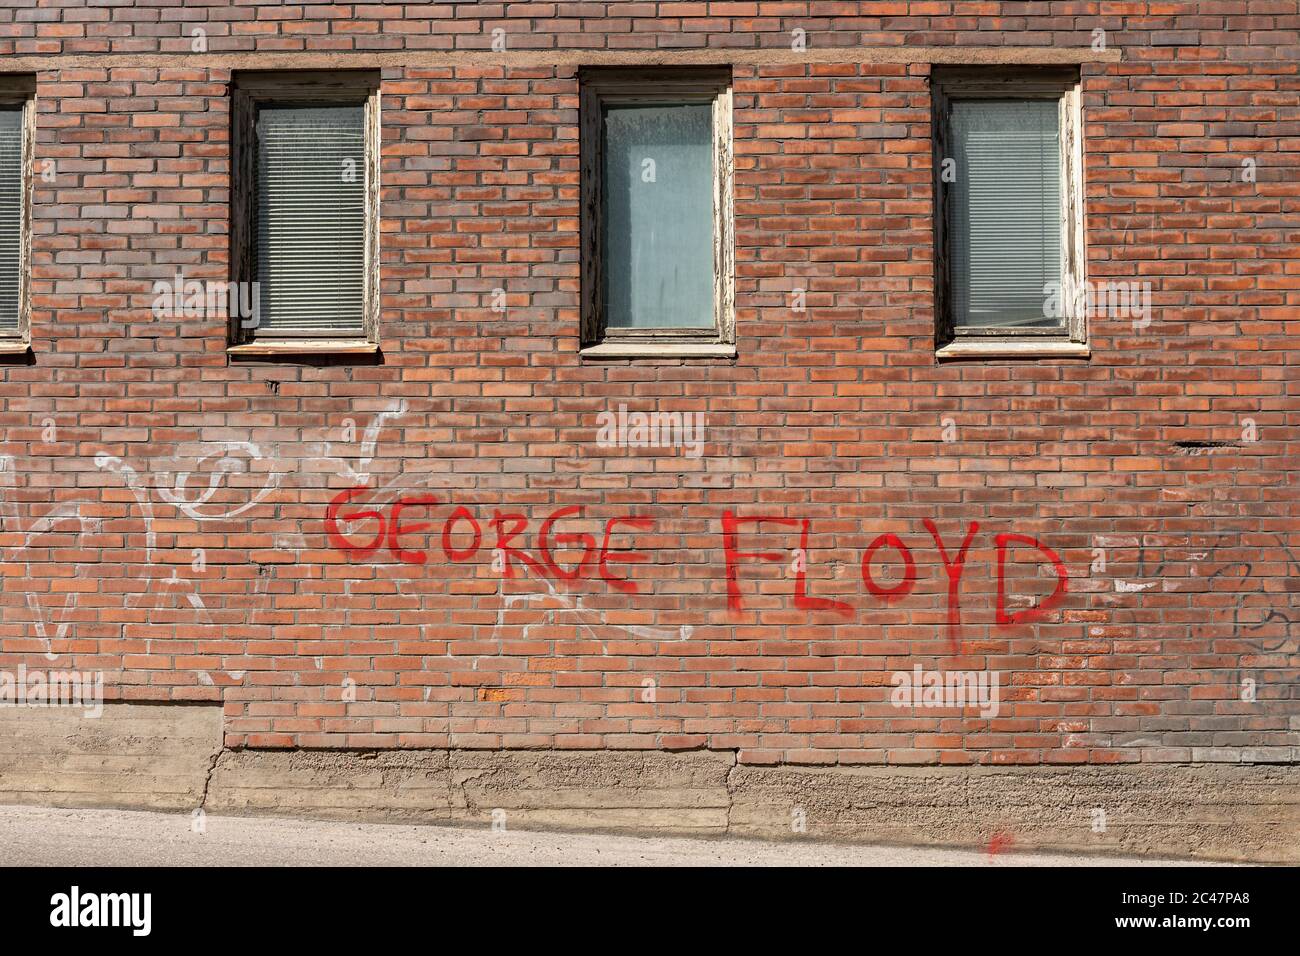 George Floyd peint en rouge sur un vieux mur de briques dans le quartier de Munkkisaari à Helsinki, en Finlande Banque D'Images